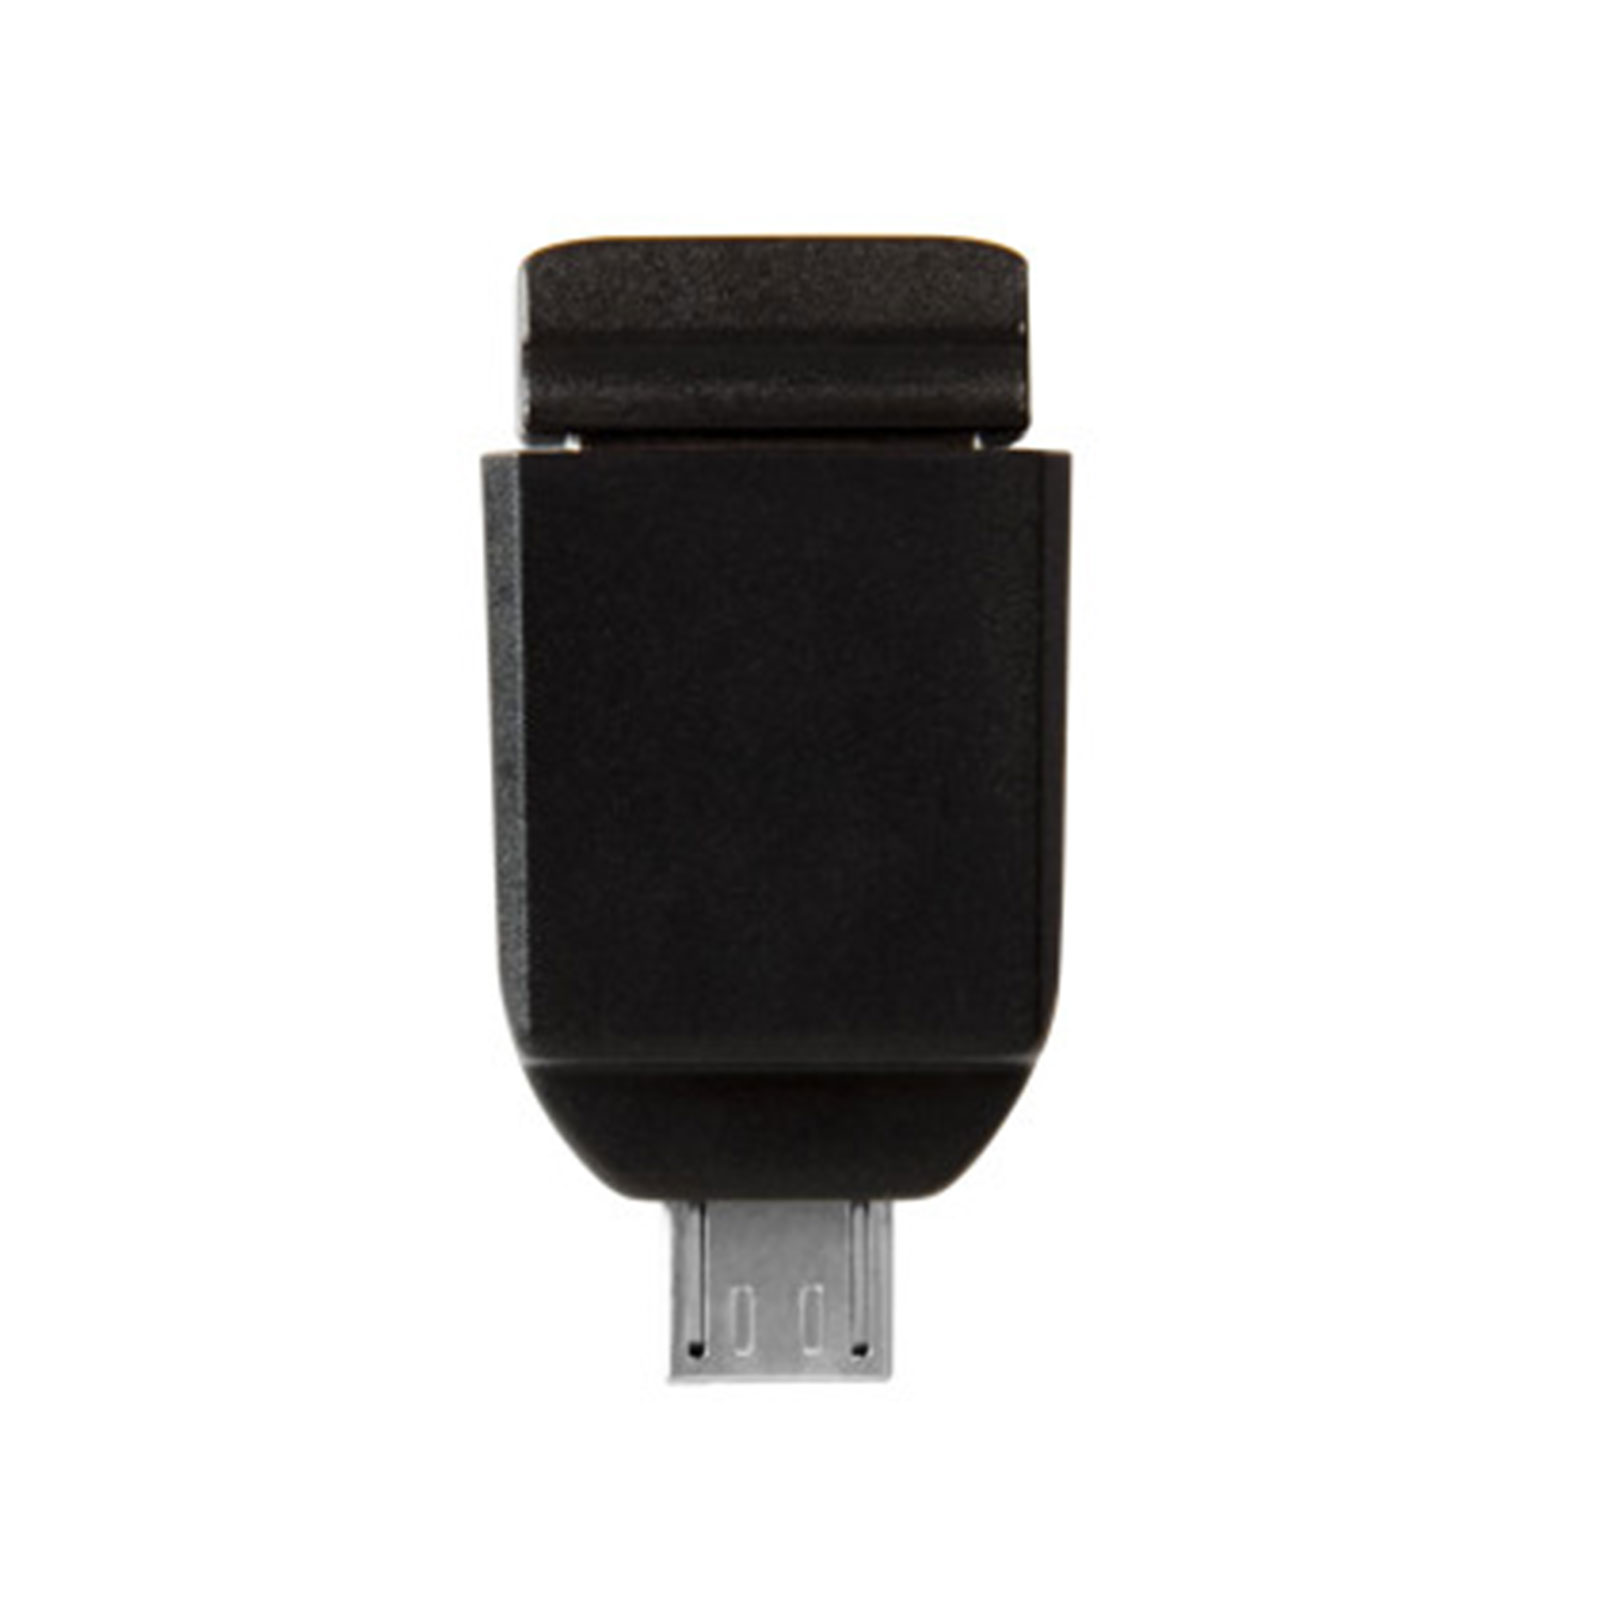 VERBATIM Store 'n' Stay Nano 16 GB mit Micro USB-Adapter schwarz USB-Stick